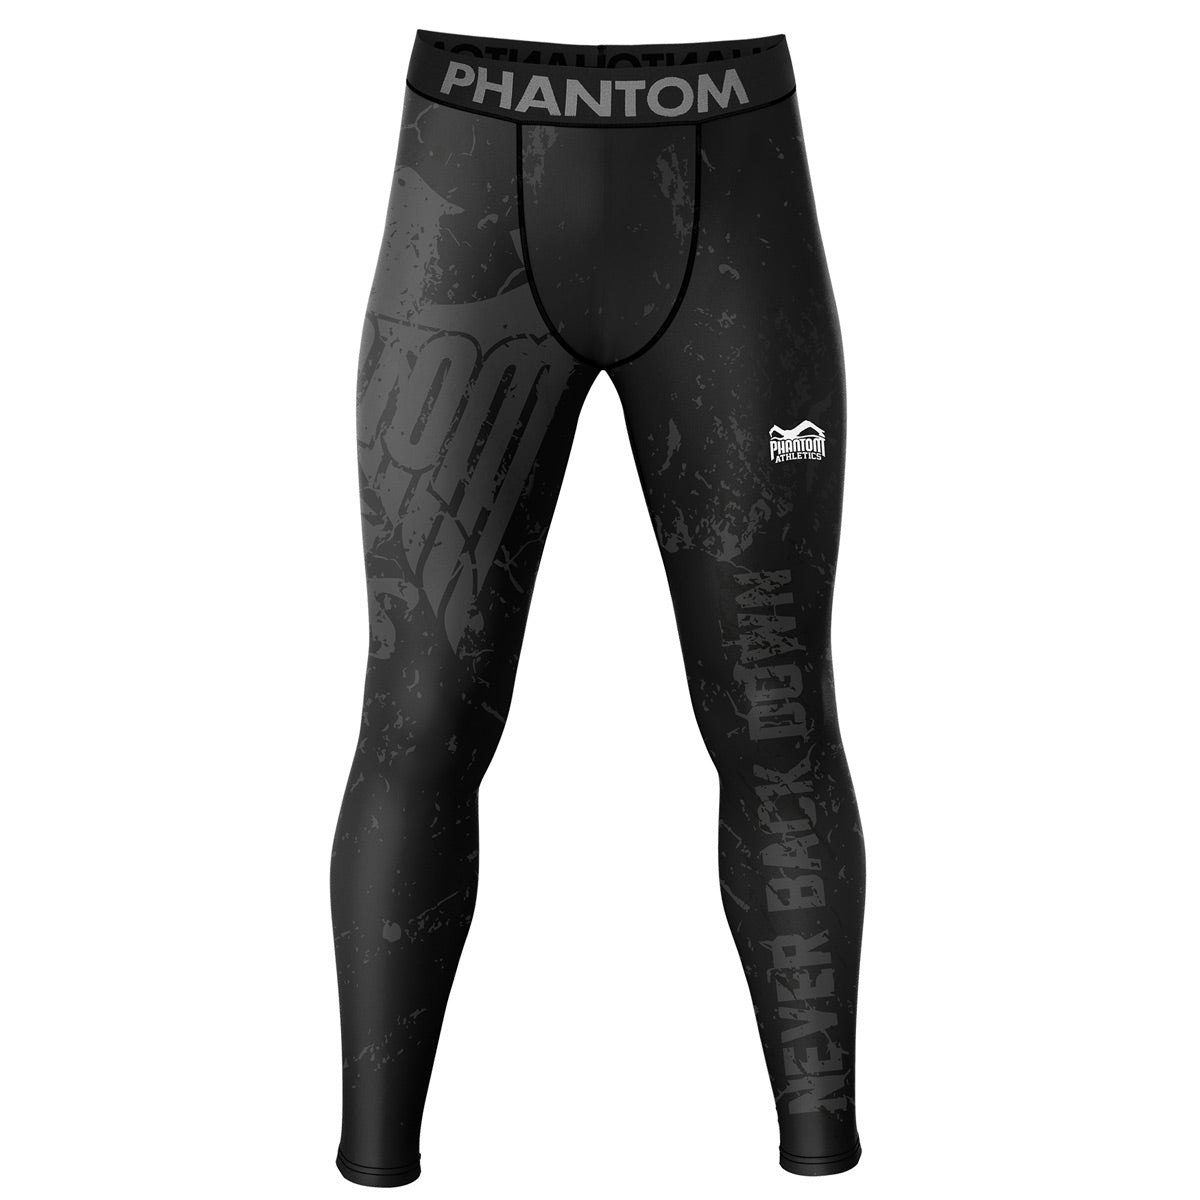 Kompresijske borilačke hlače Phantom EVO u dizajnu Team Germany. S njemačkim orlom i natpisom "Never Back Down". Idealno za vaše borilačke sportove, kao što su MMA, Muay Thai, hrvanje, BJJ ili kickboxing.